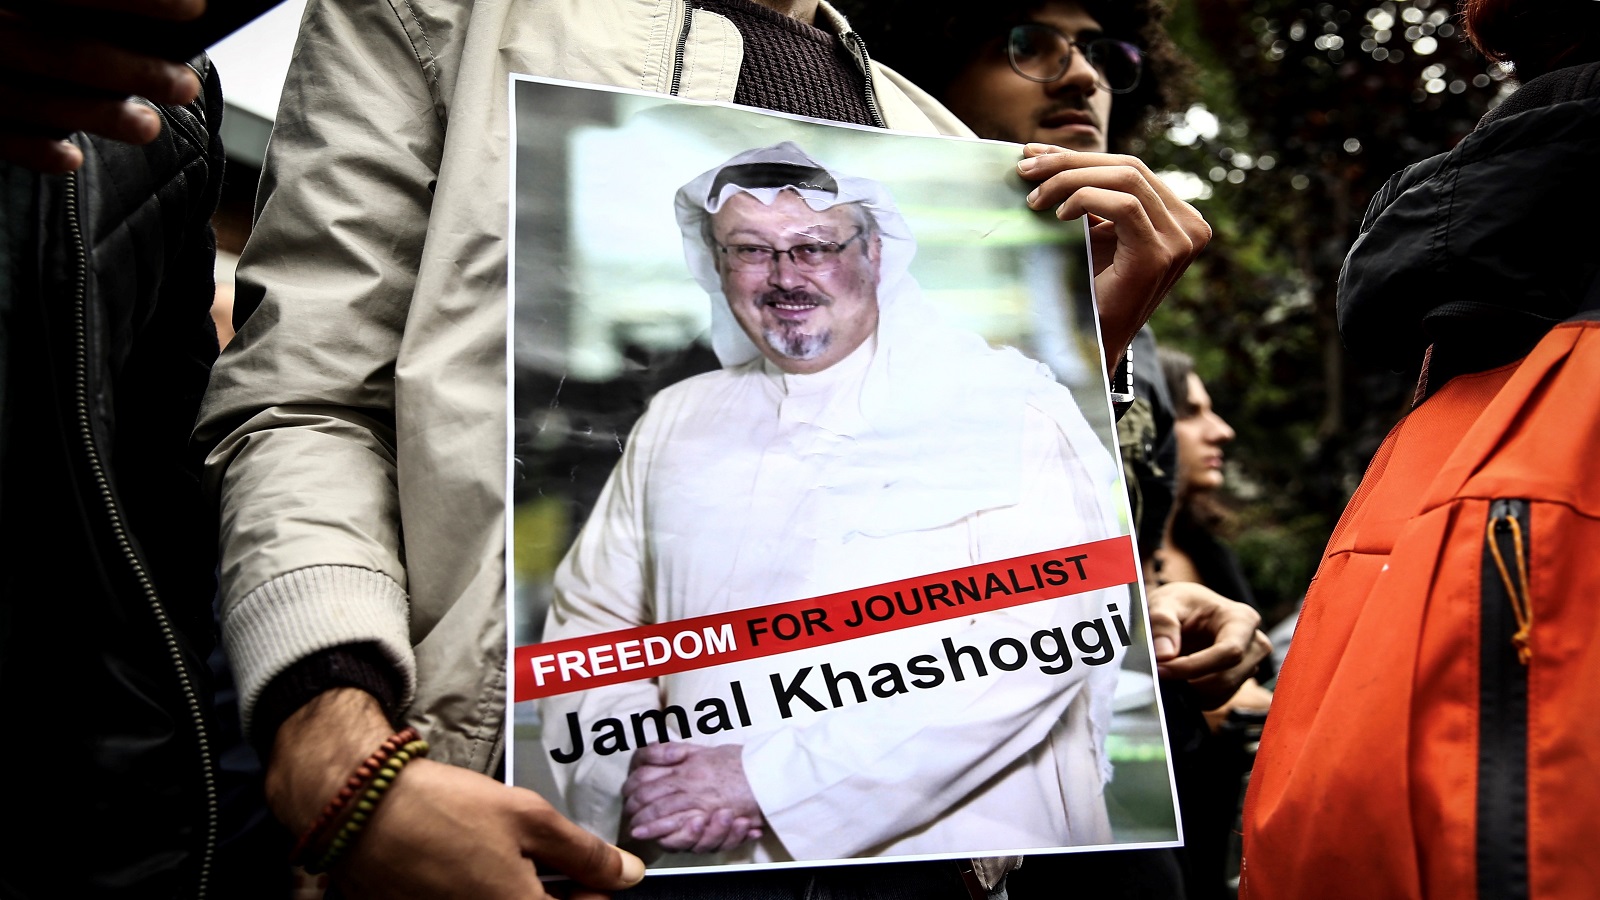 "تويتر" يوقف حسابات موالية للسعودية في قضية خاشقجي